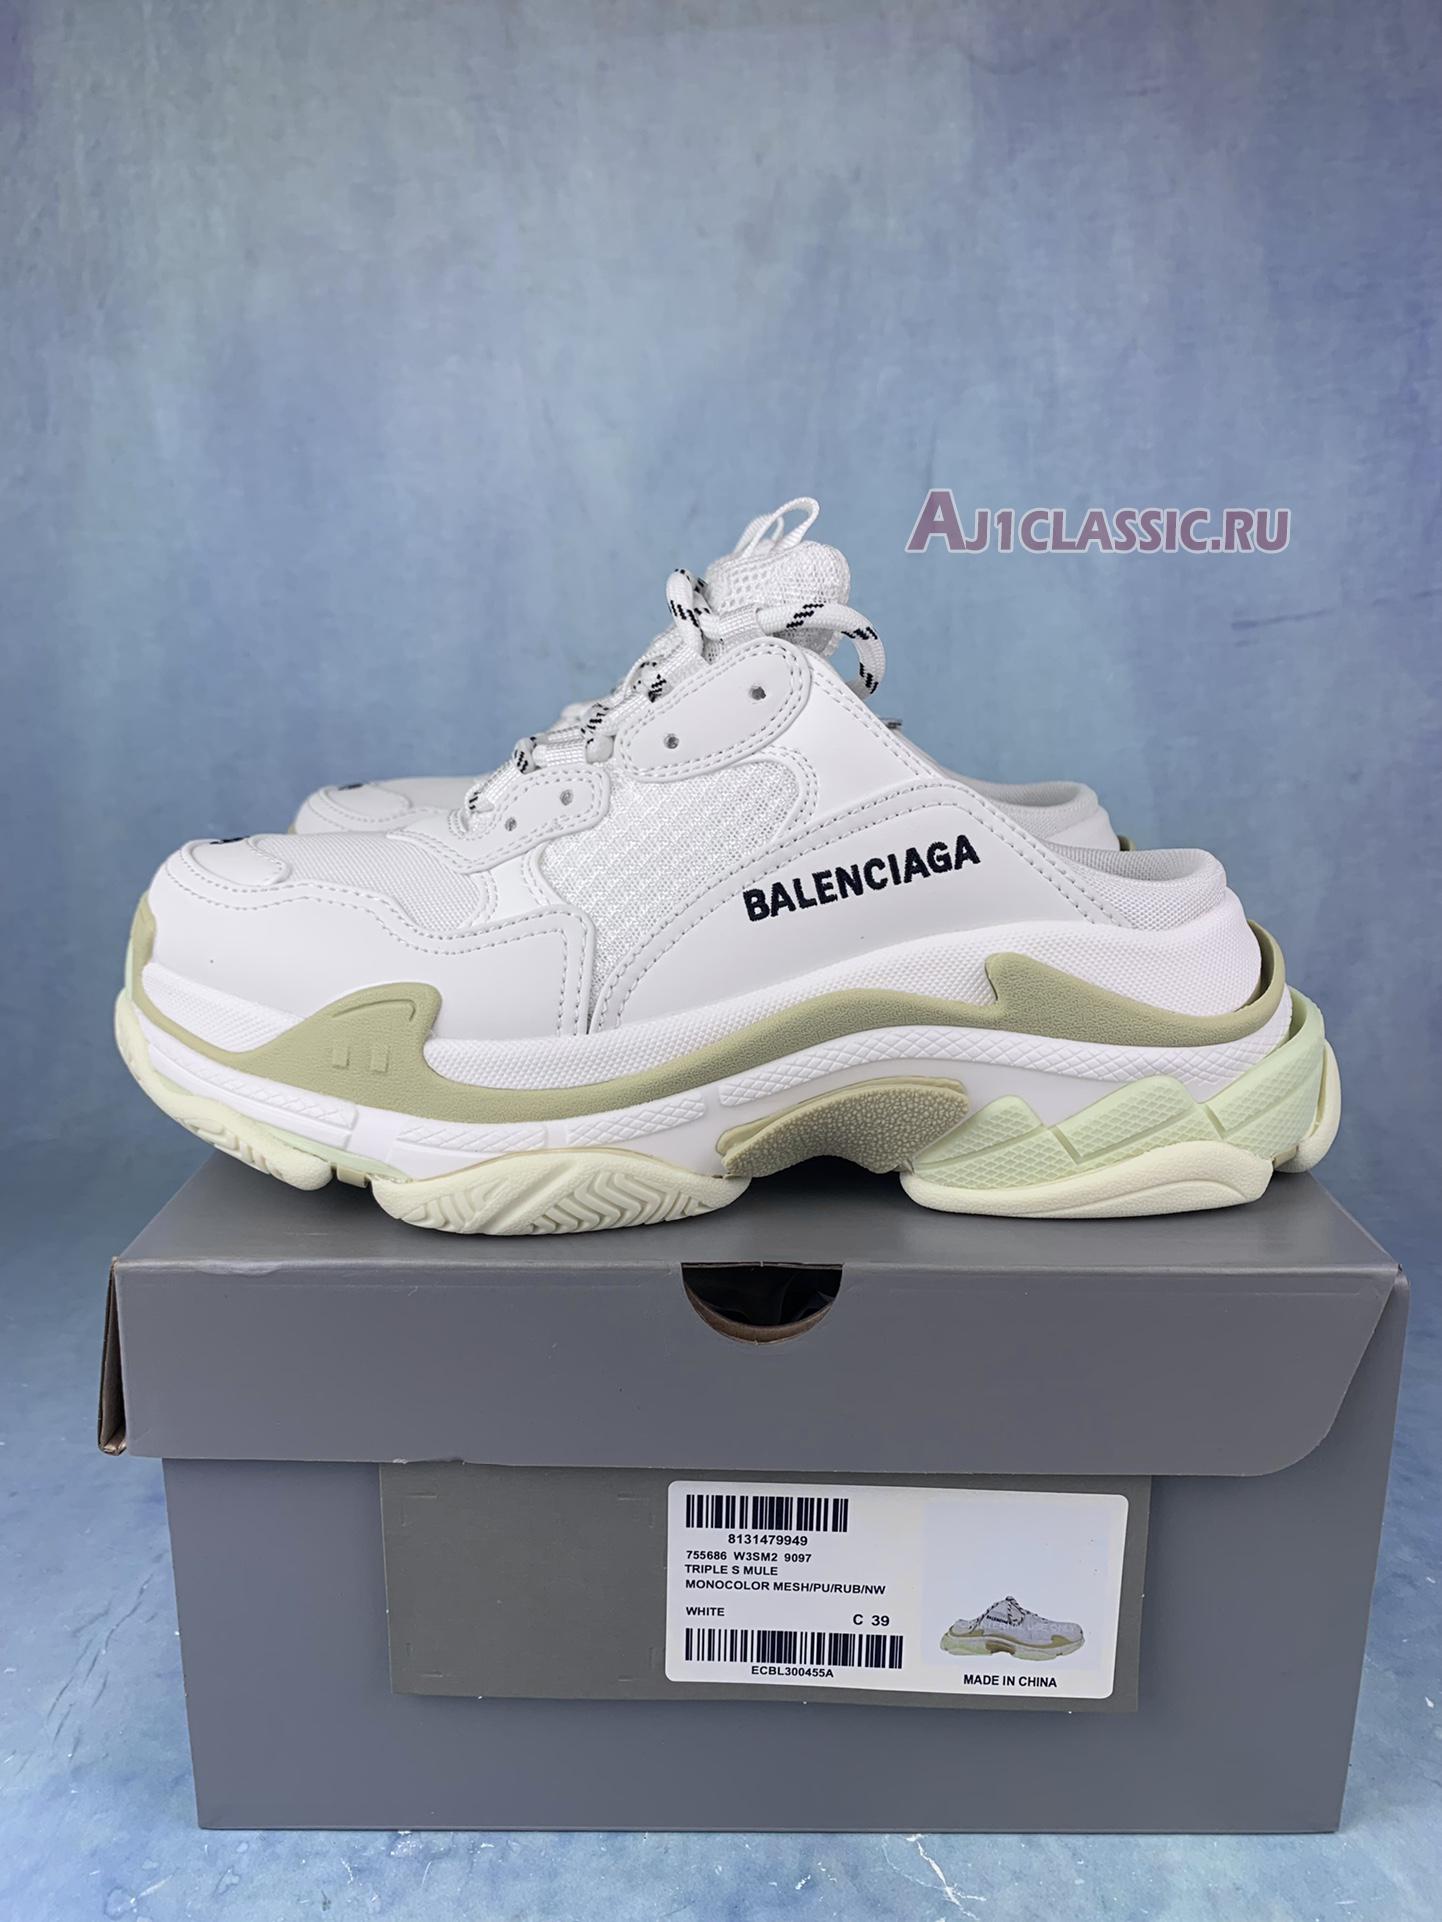 Balenciaga Triple S Mule White 755686 W3SM 29097 White/Black Sneakers